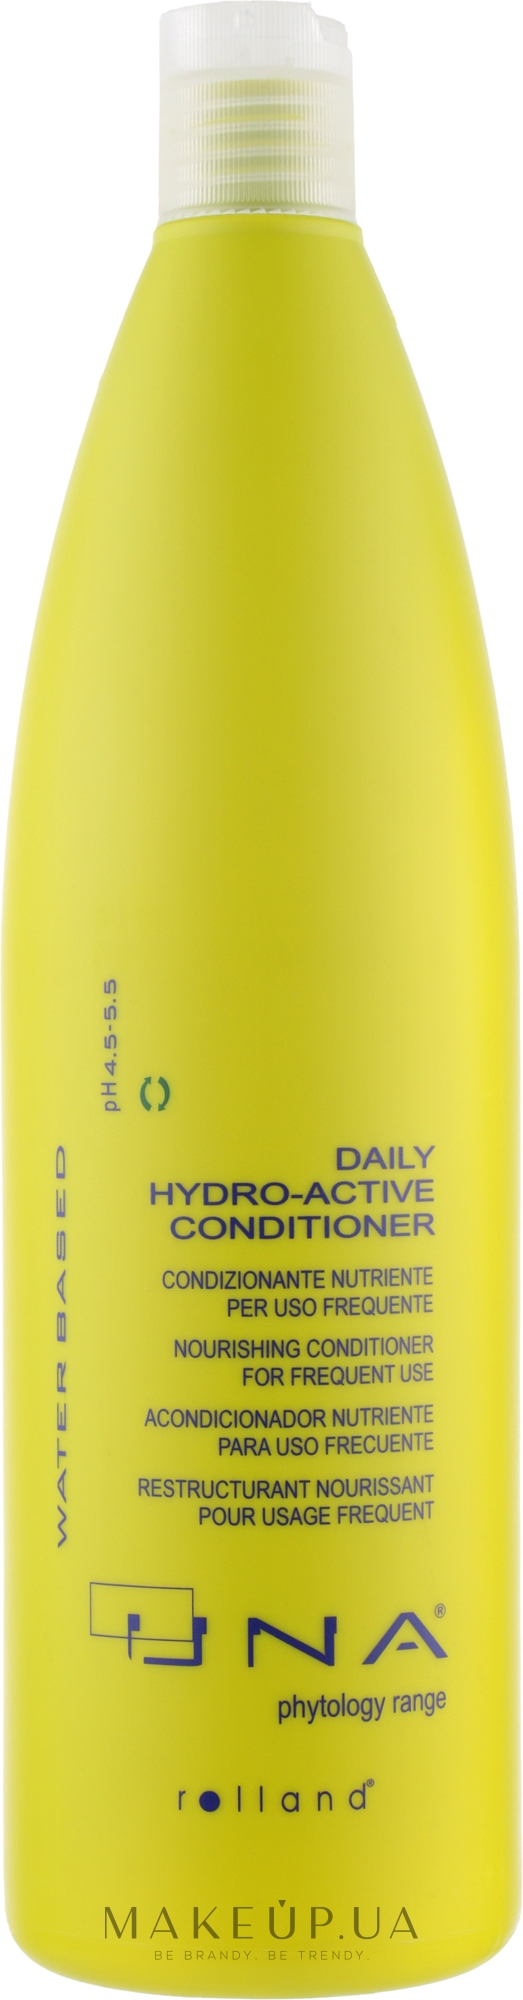 Кондиционер гидровосстанавливающий для всех типов волос - Una Daily Hydro-Active Conditioner — фото 1000ml